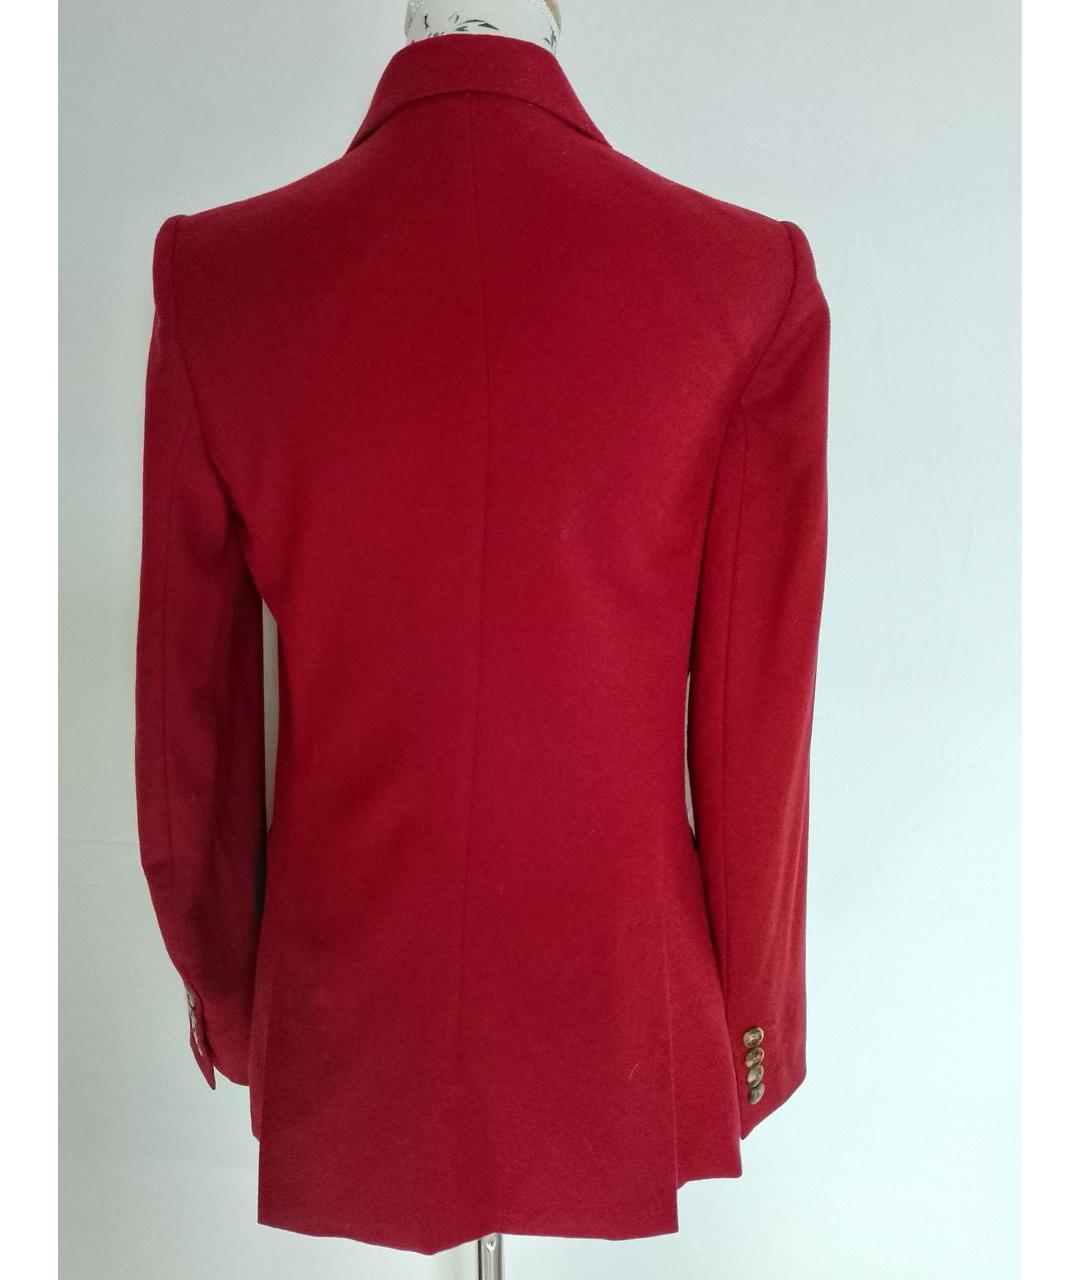 MAX MARA Красный шерстяной жакет/пиджак, фото 3